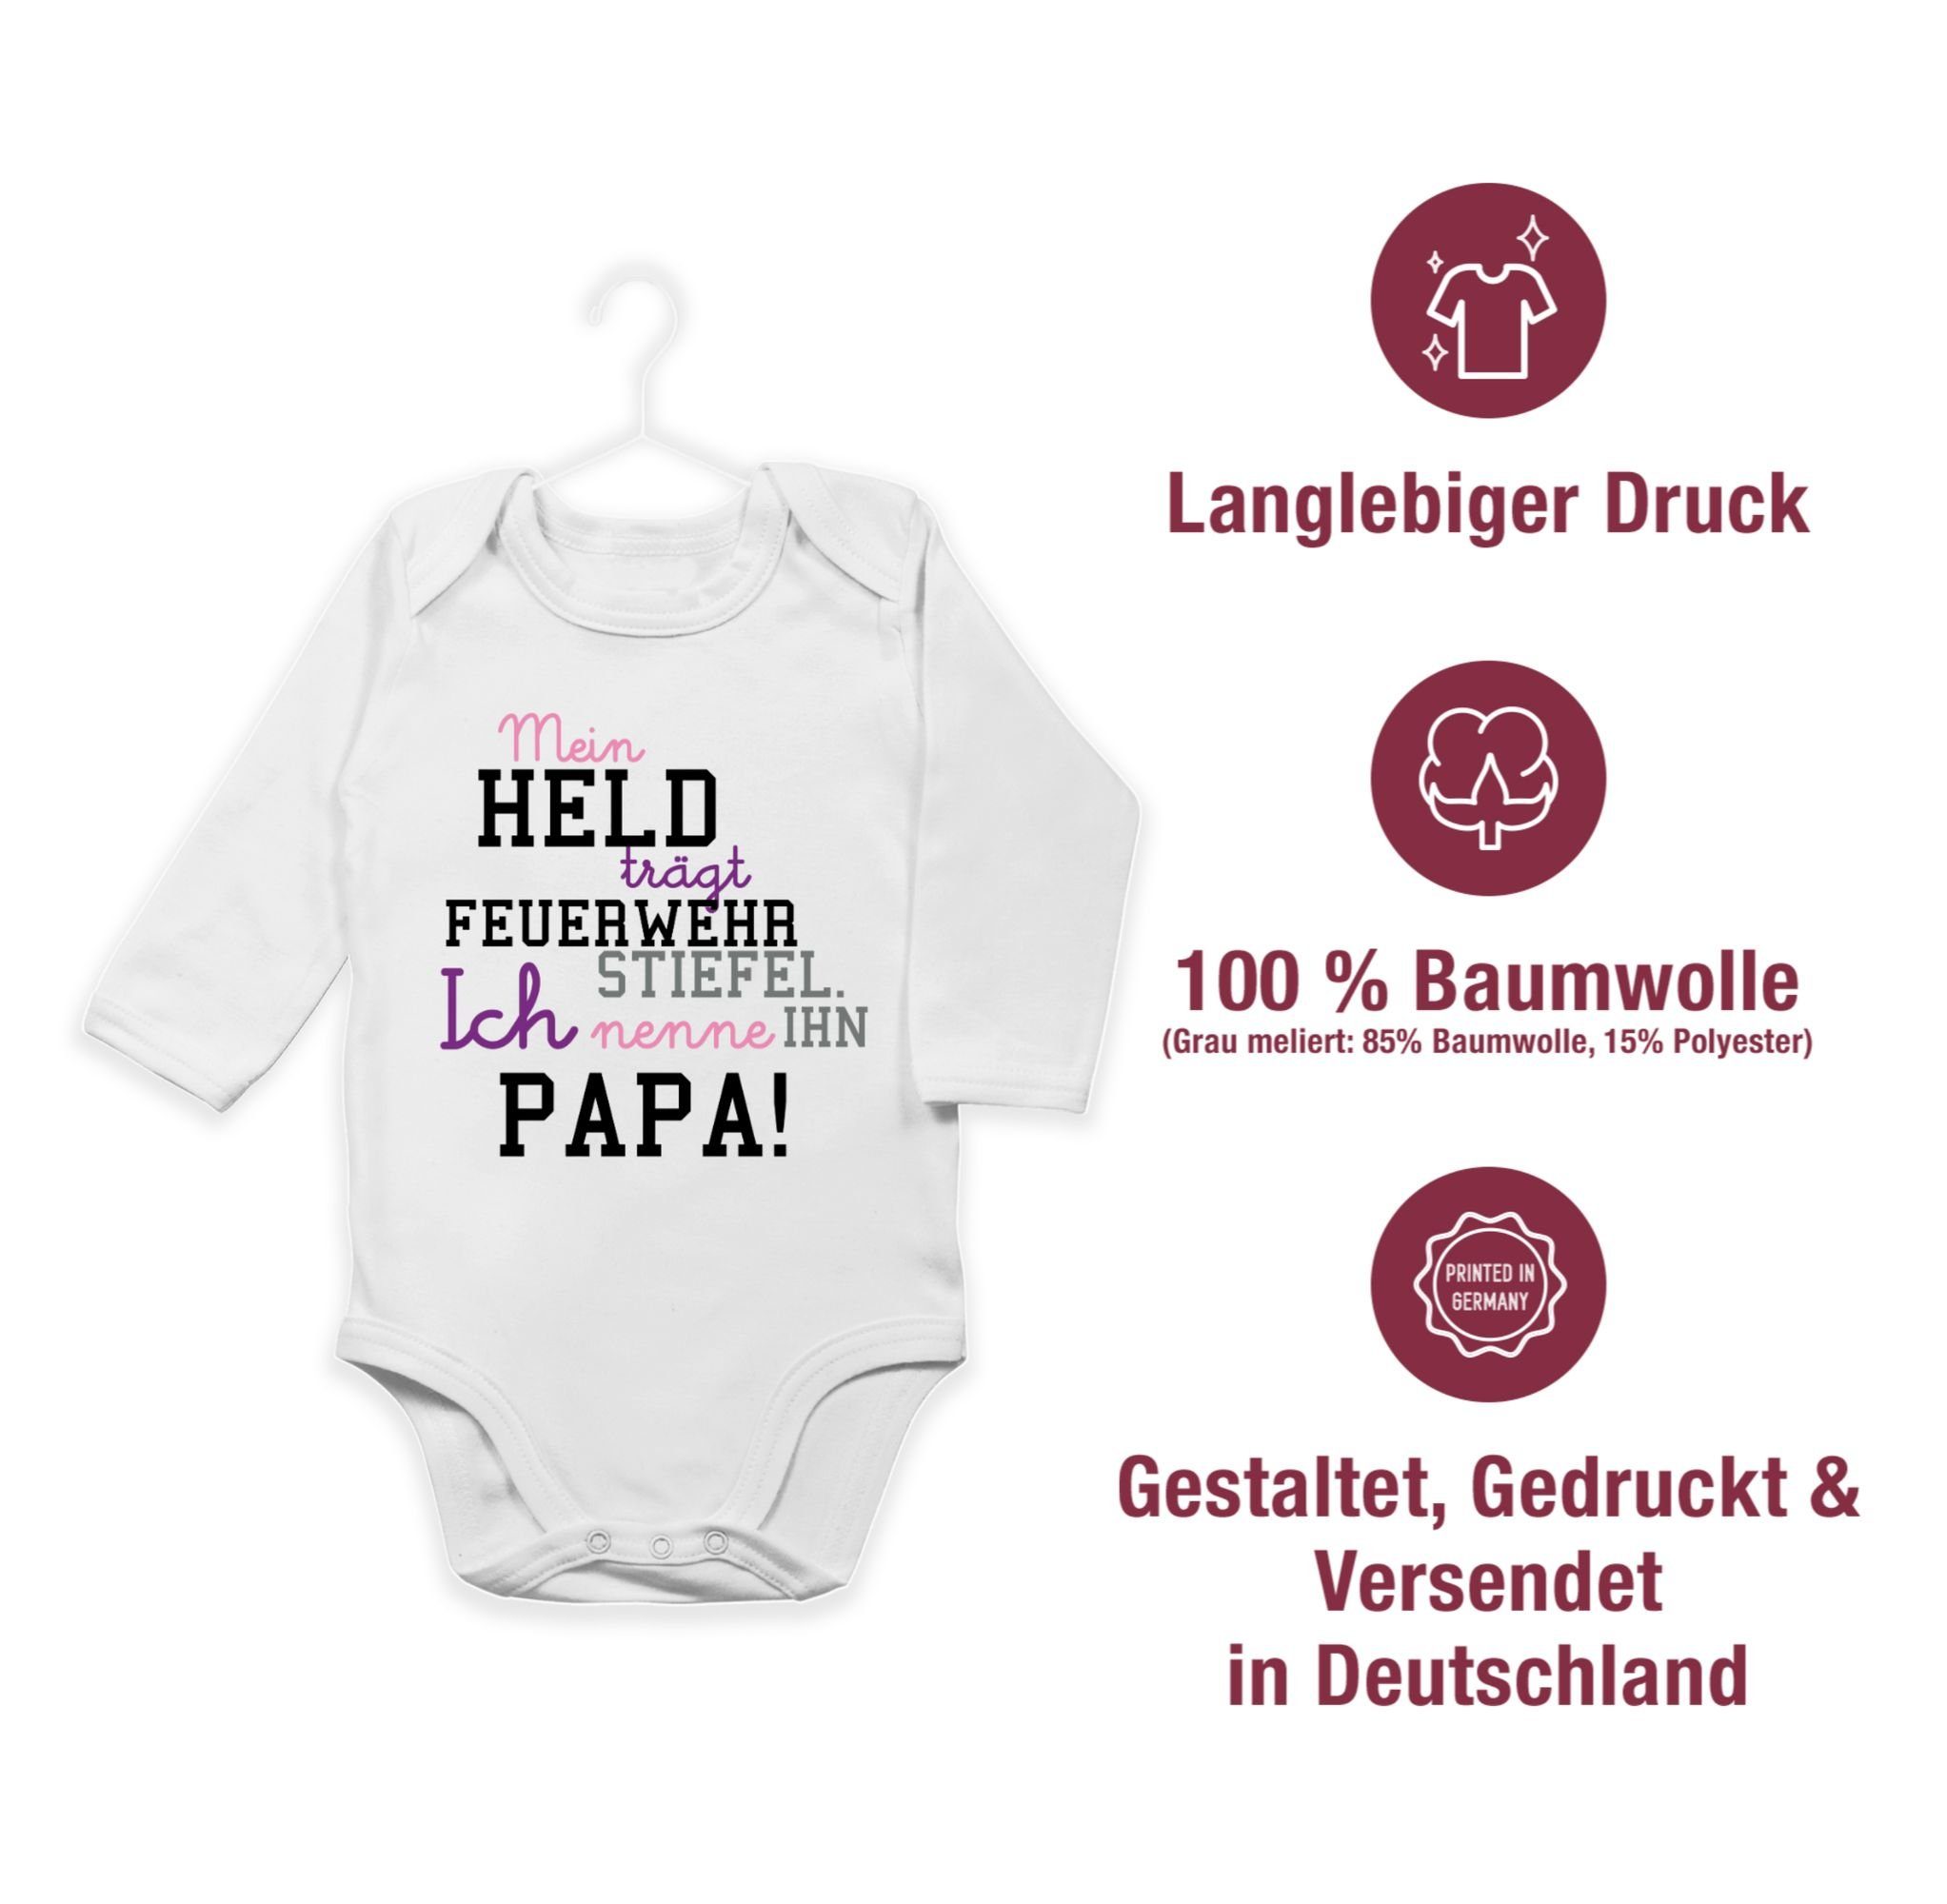 Kinder Mädchen (Gr. 50 - 92) Shirtracer Shirtbody Mein Held Papa Feuerwehrmann - Feuerwehr Geschenke Baby - Bio Baby Strampler l